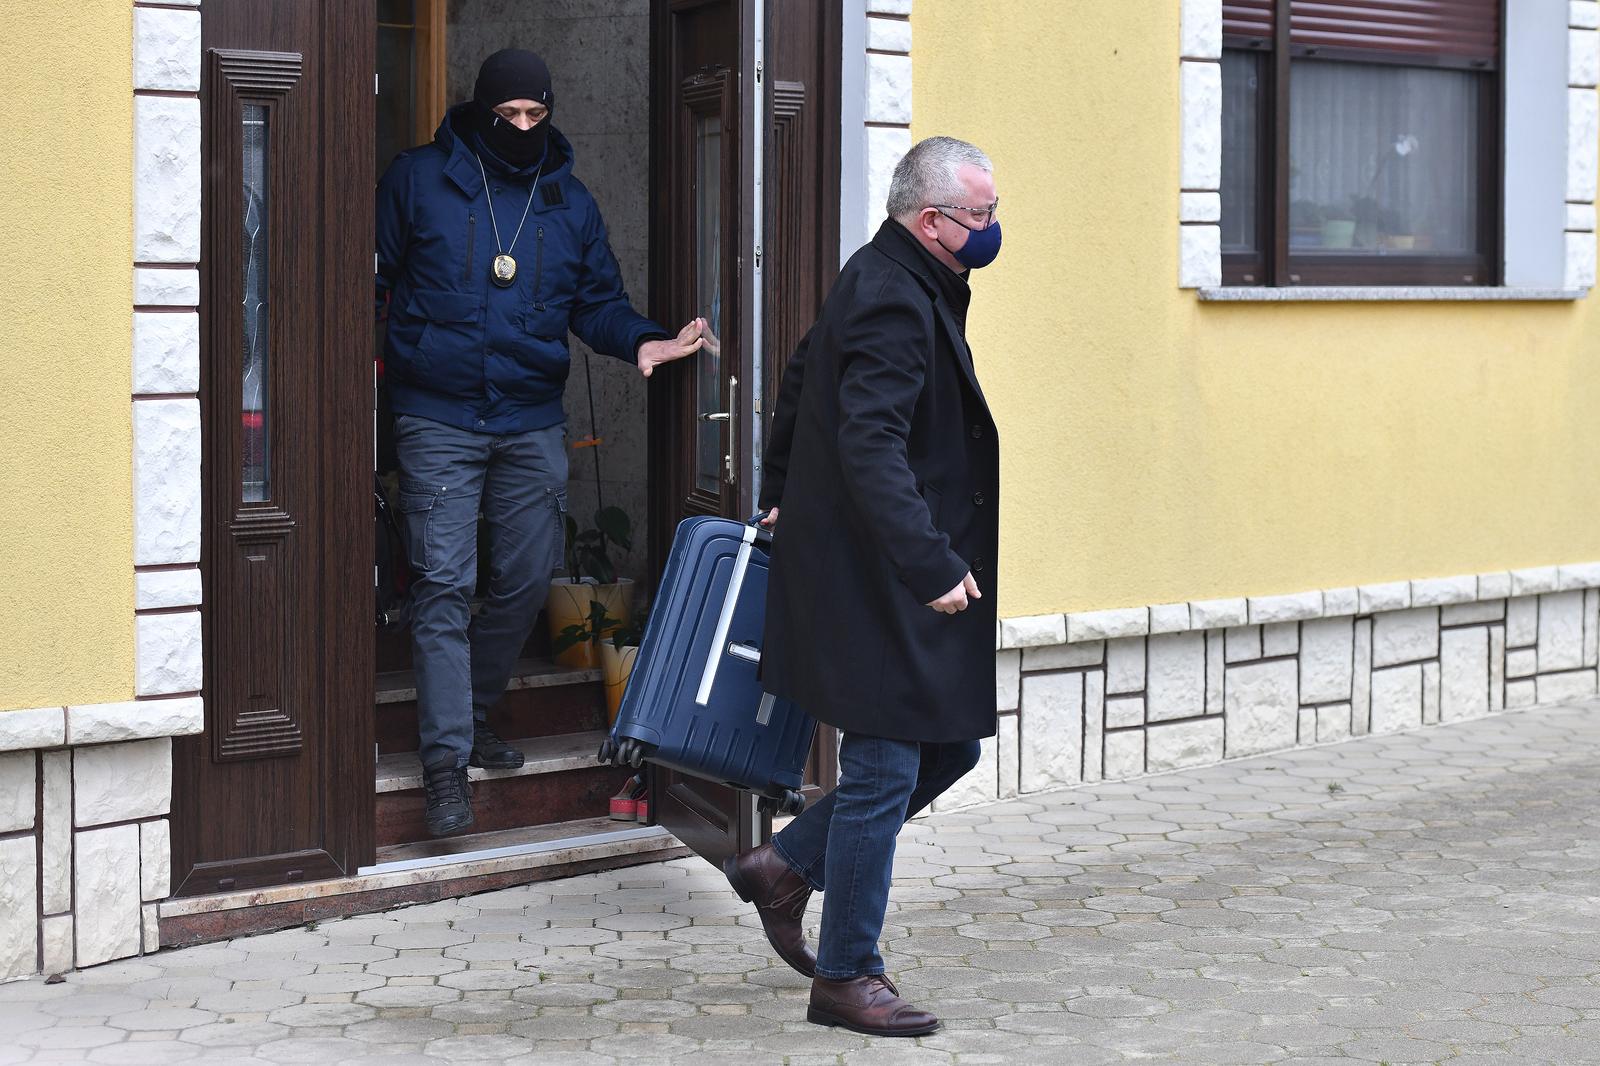 19.02.2022., Donja Dubrava - Ministar Darko Horvat napustio kuću u pratnji policije. Photo: Vjeran Zganec Rogulja/PIXSELL